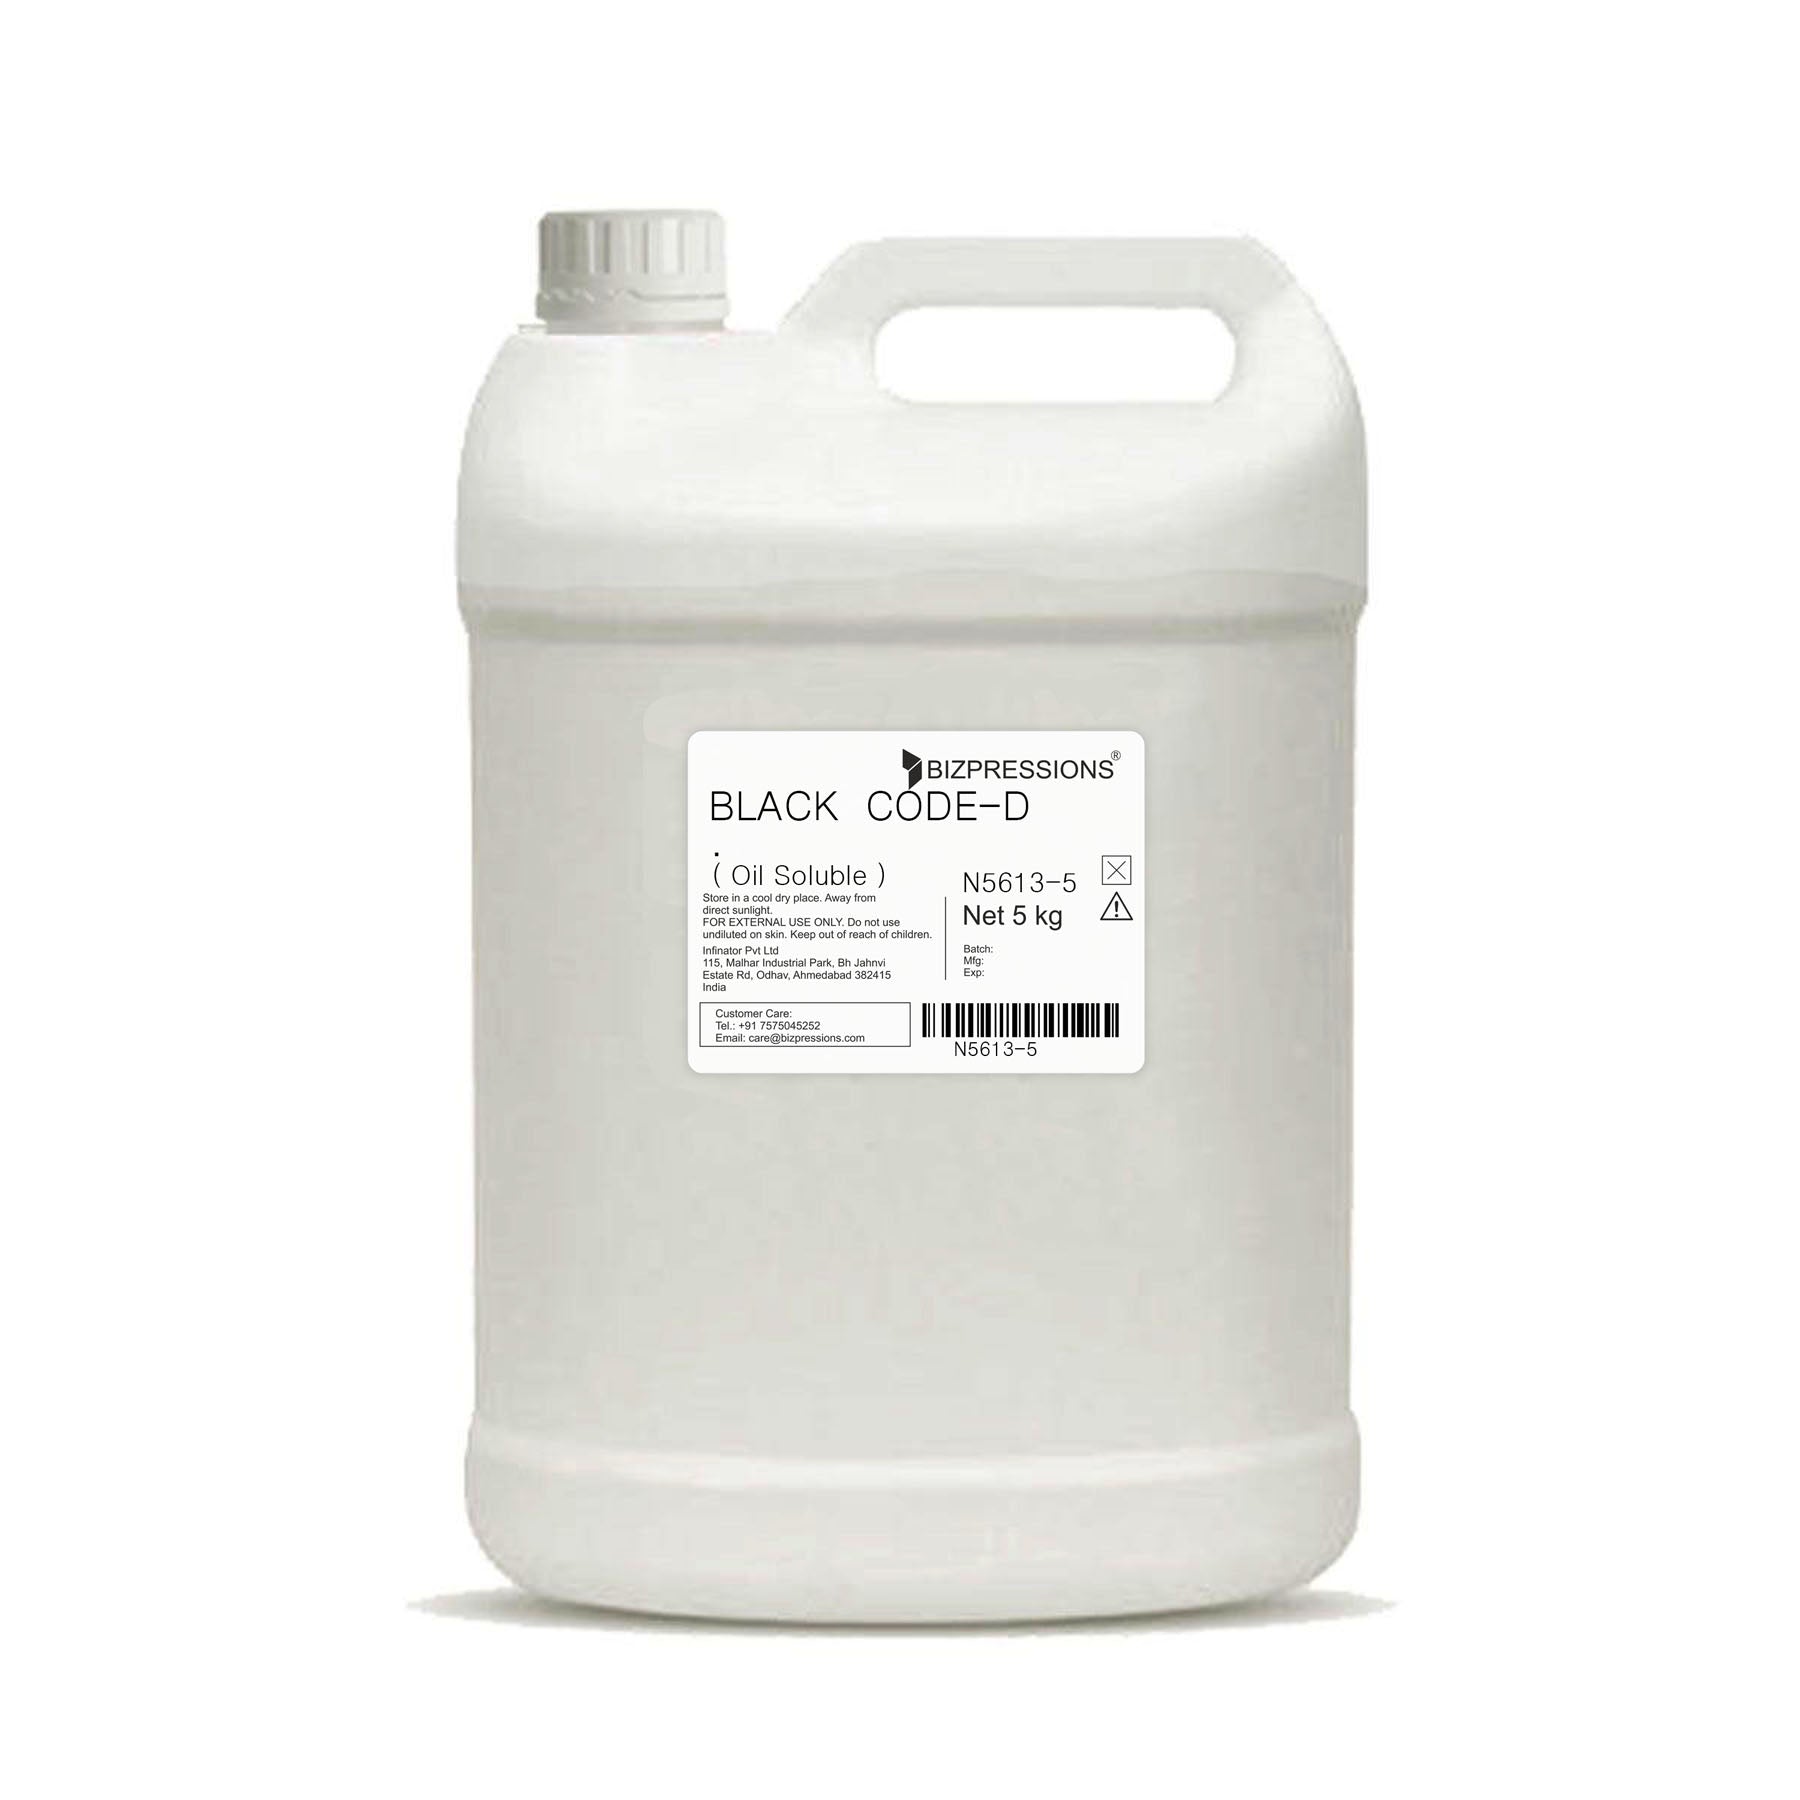 BLACK CODE-D - Fragrance ( Oil Soluble ) - 5 kg